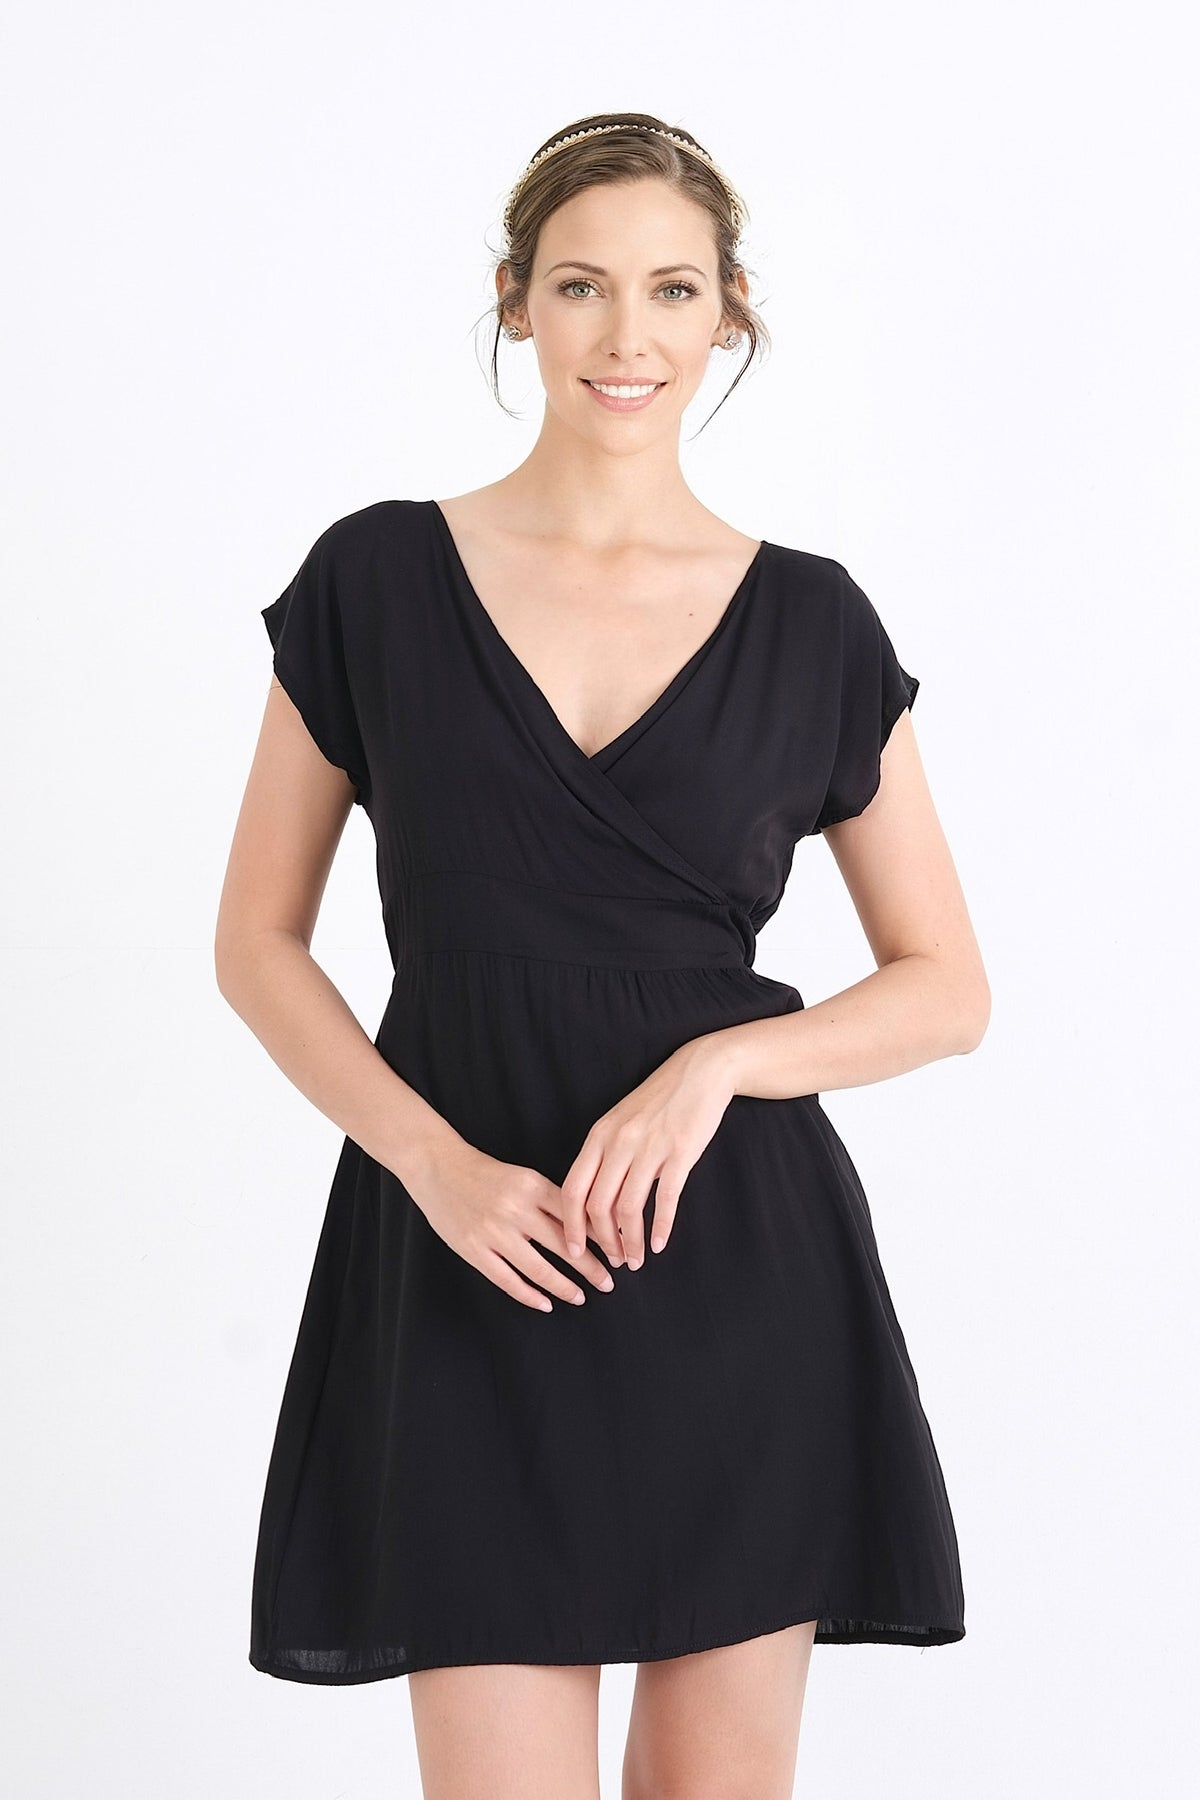 Explorez le style moderne de cette robe en viscose soyeuse et confortable. Idéale pour l'été, cette pièce est disponible en ligne pour les femmes élégantes du Québec, du XS au XXL.